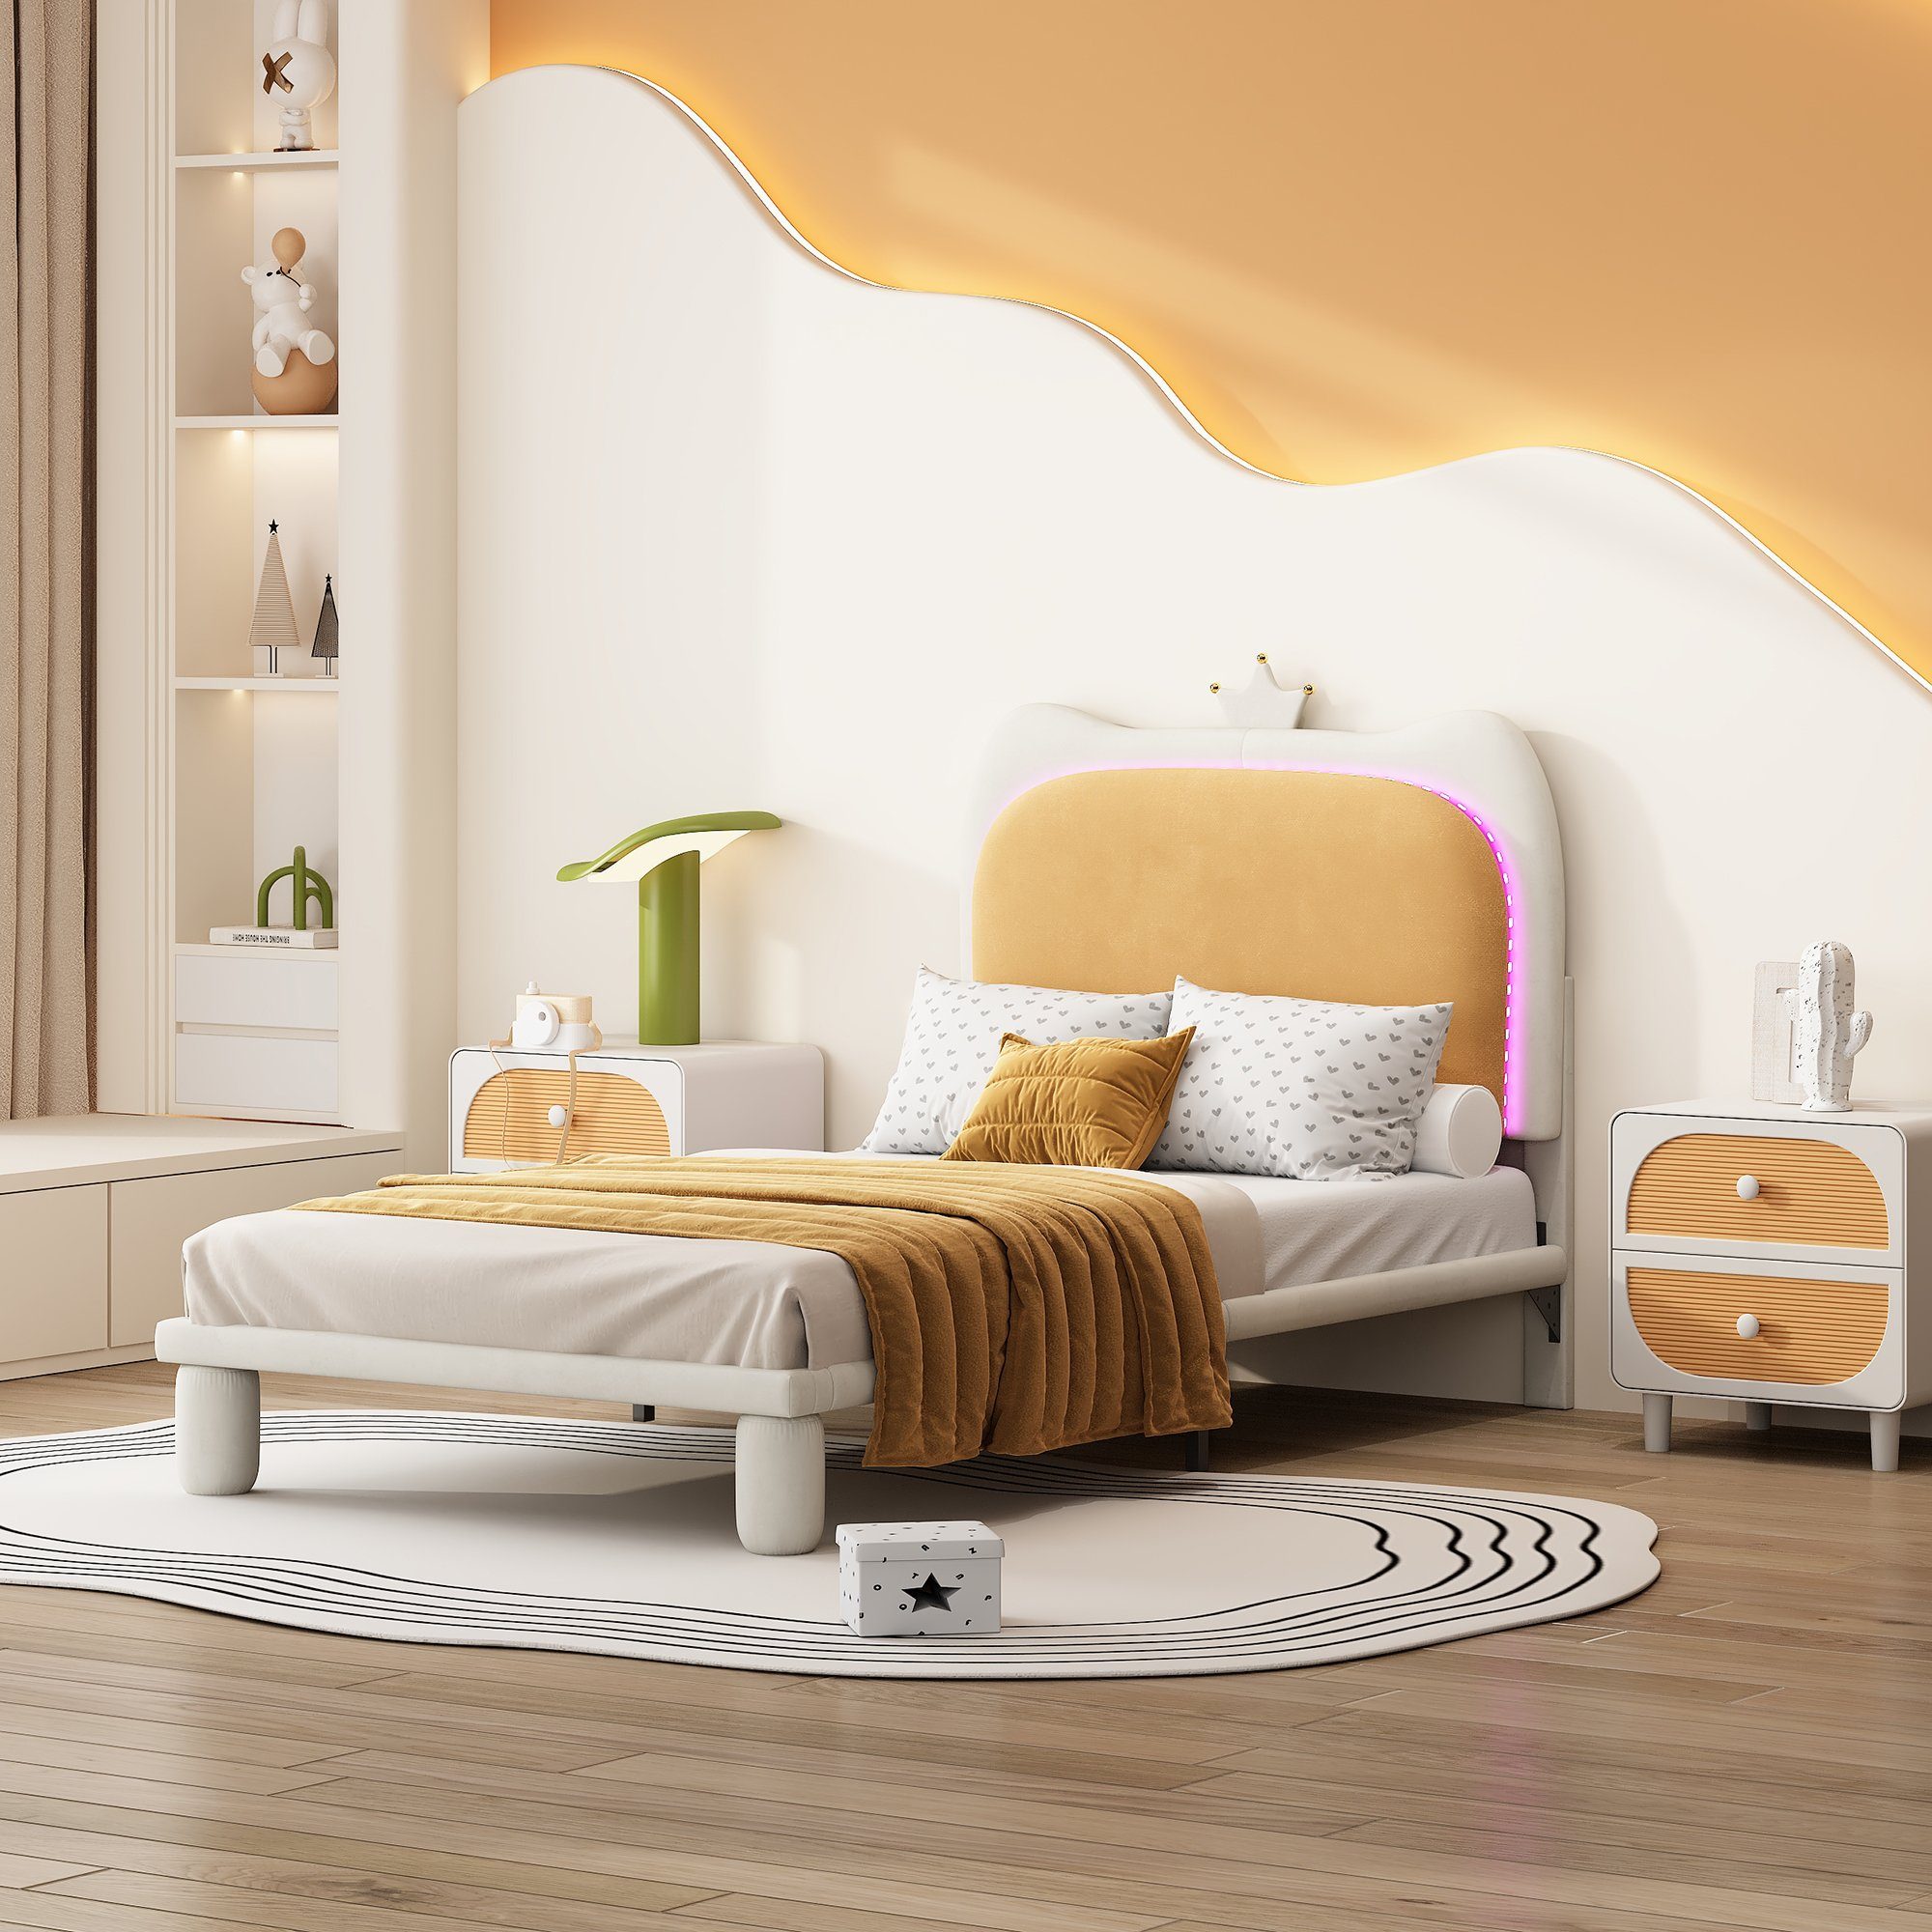 Flieks Polsterbett, LED Beleuchtung Kinderbett Einzelbett mit Krone am Kopfteil 90x200cm